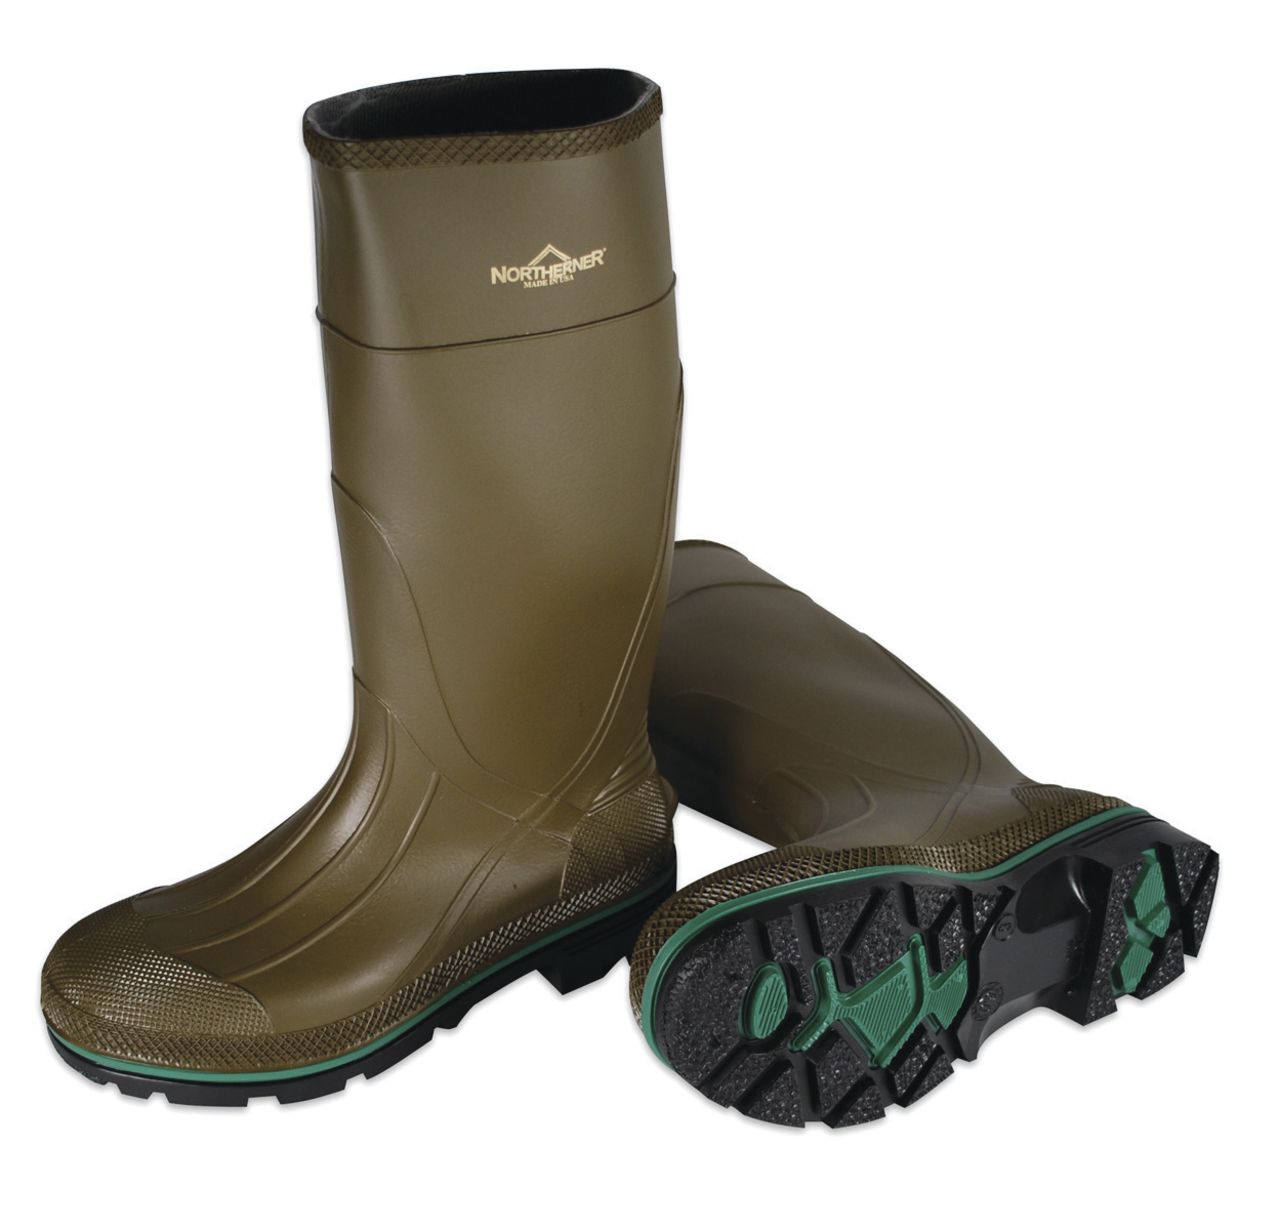 Servus Green Max Rubber Boots